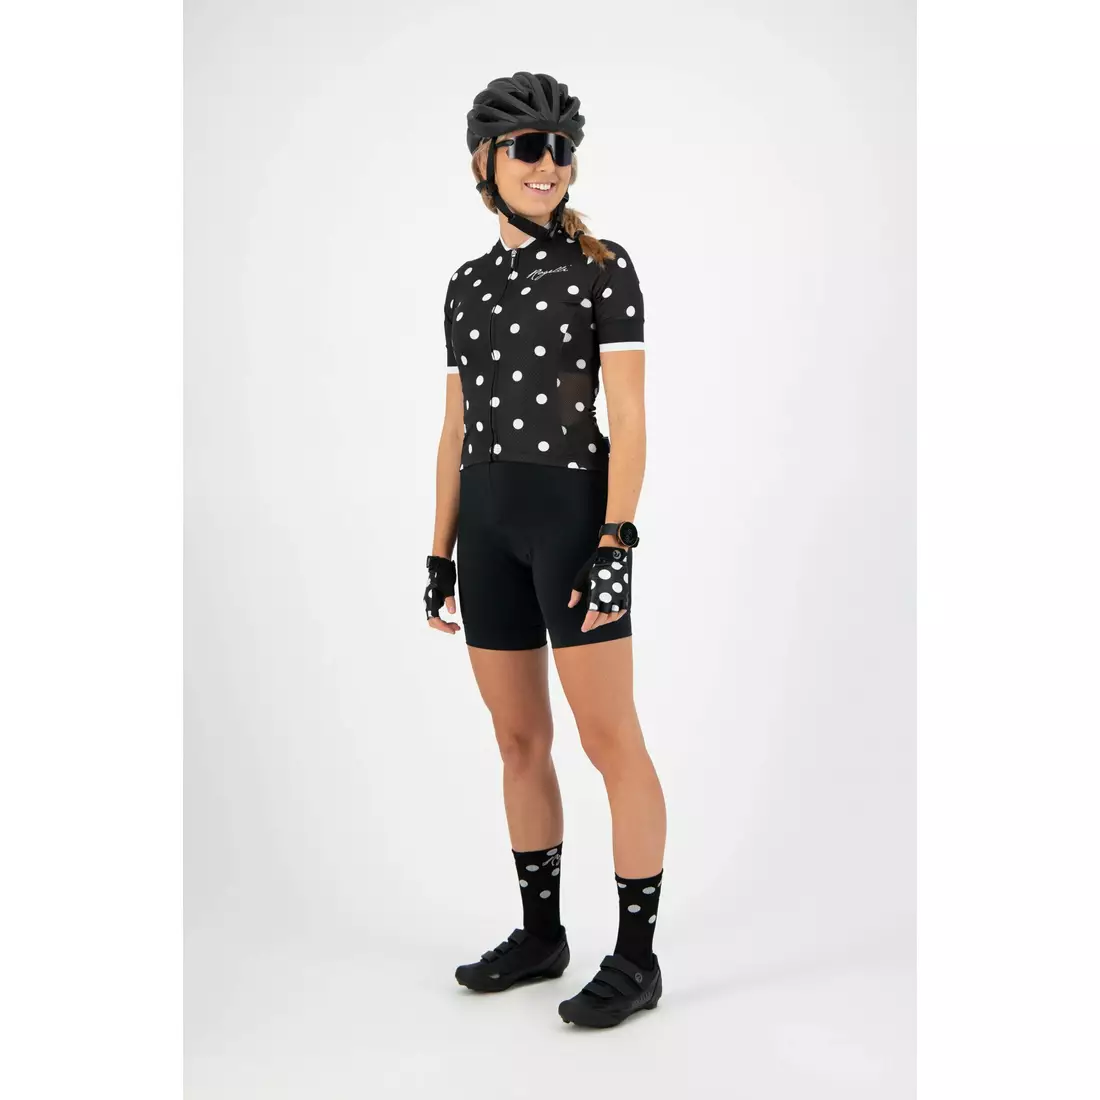 ROGELLI women's cycling jersey SPRINKLE black 010.060